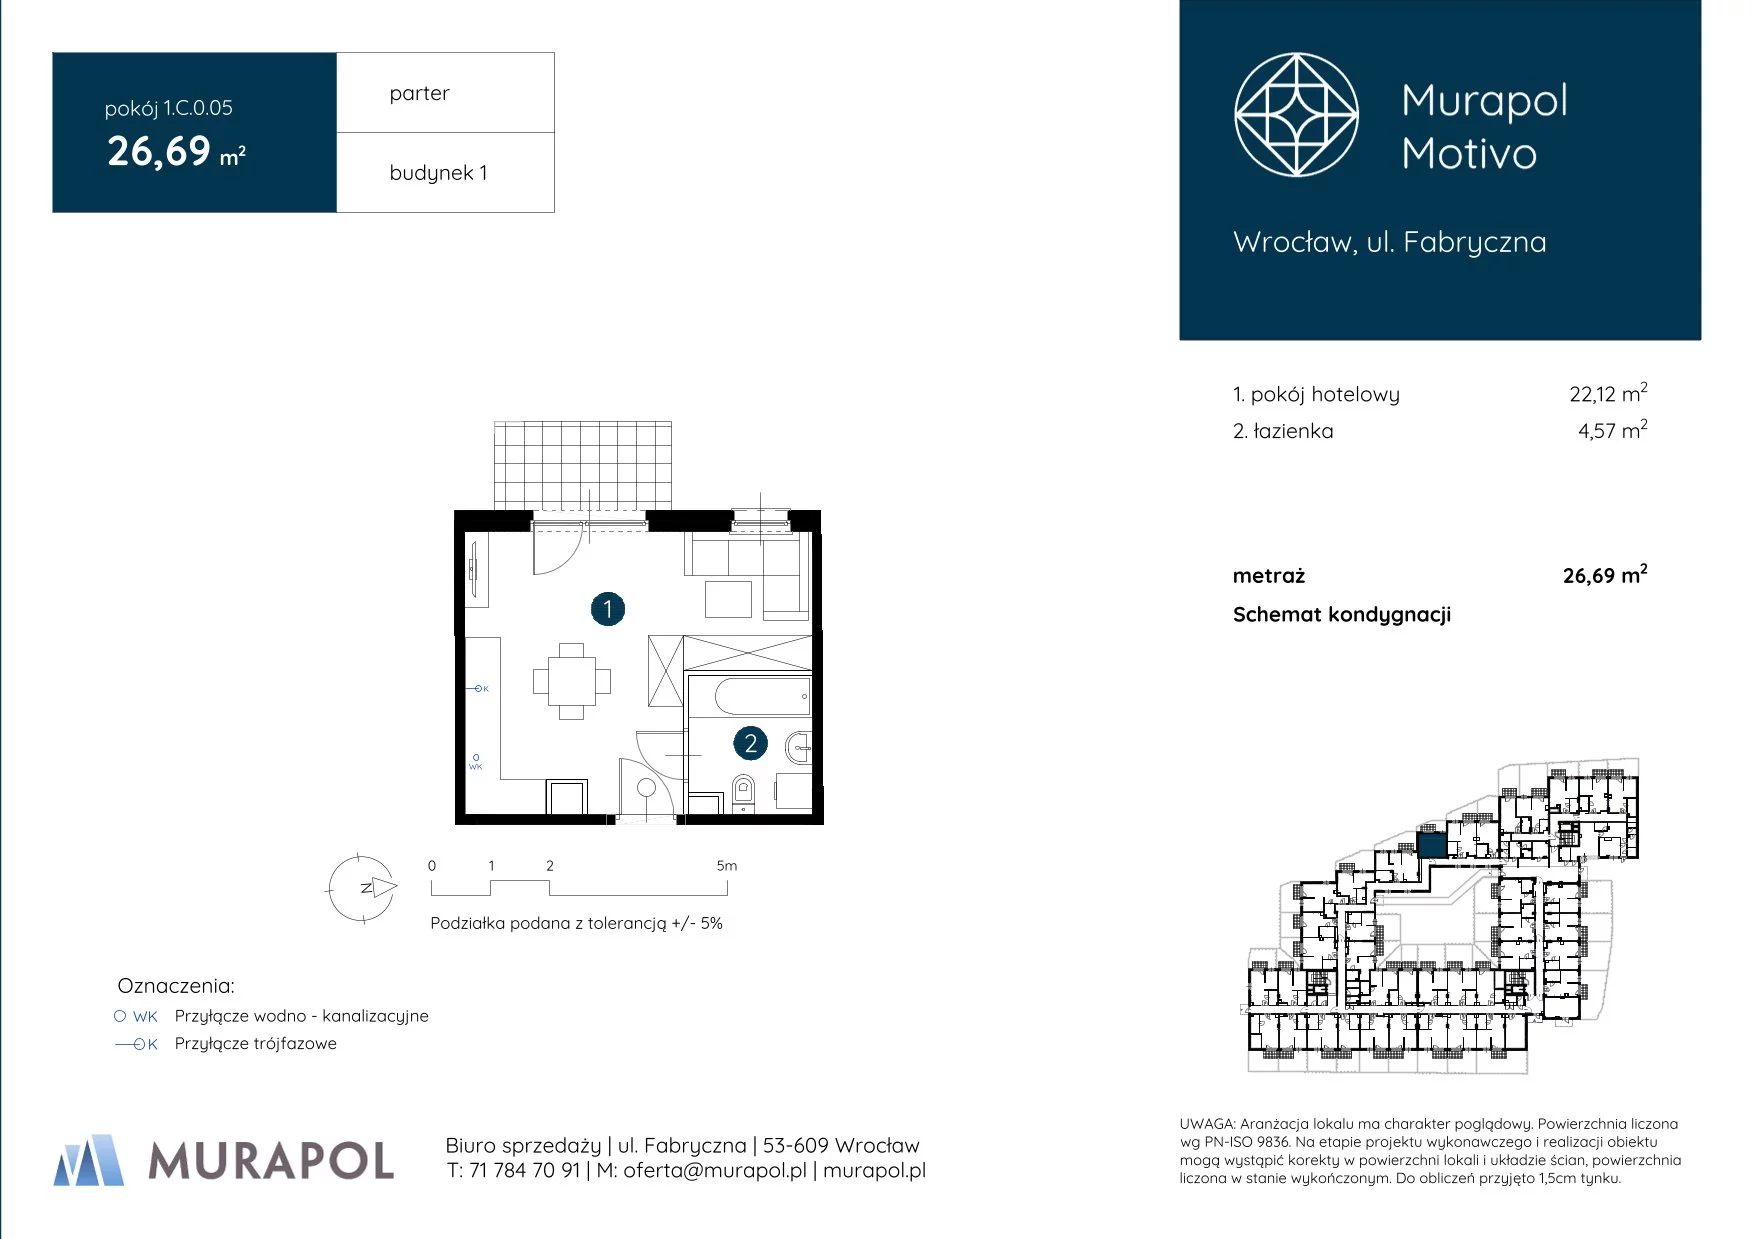 Apartament inwestycyjny 26,69 m², parter, oferta nr 1.C.0.05, Murapol Motivo, Wrocław, Muchobór Mały, Fabryczna, ul. Fabryczna